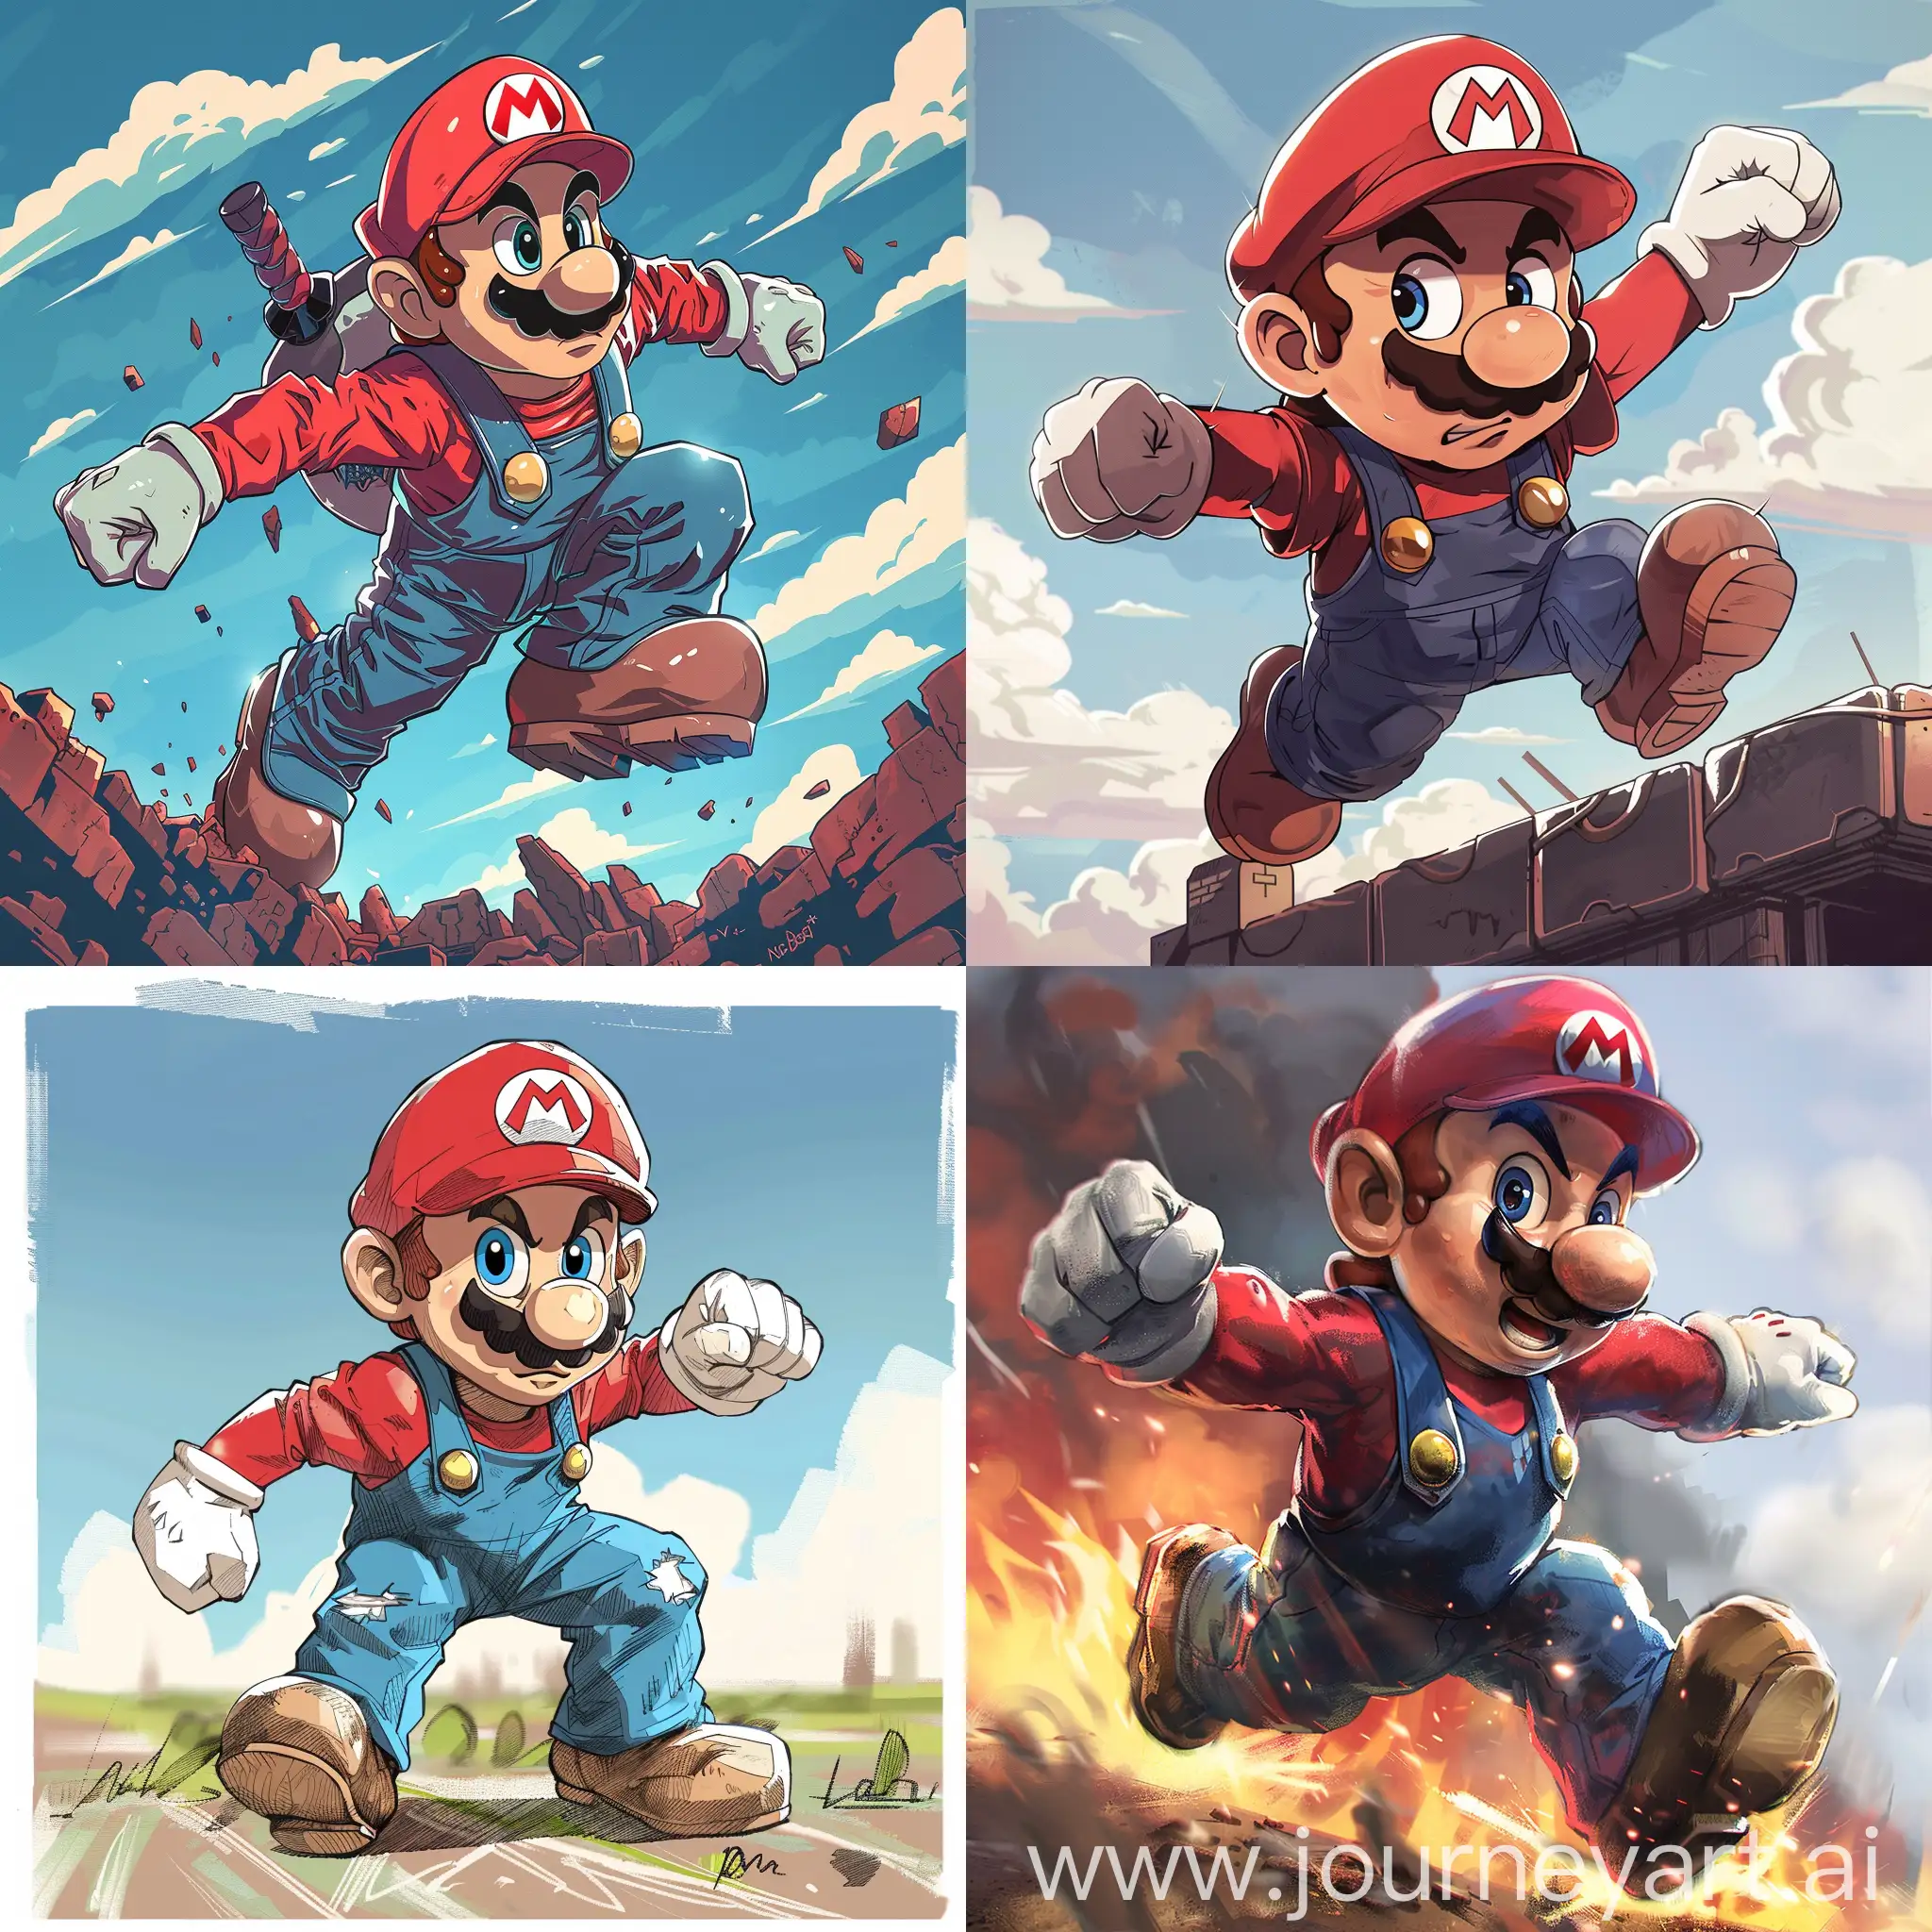 Mario in a Bara art style